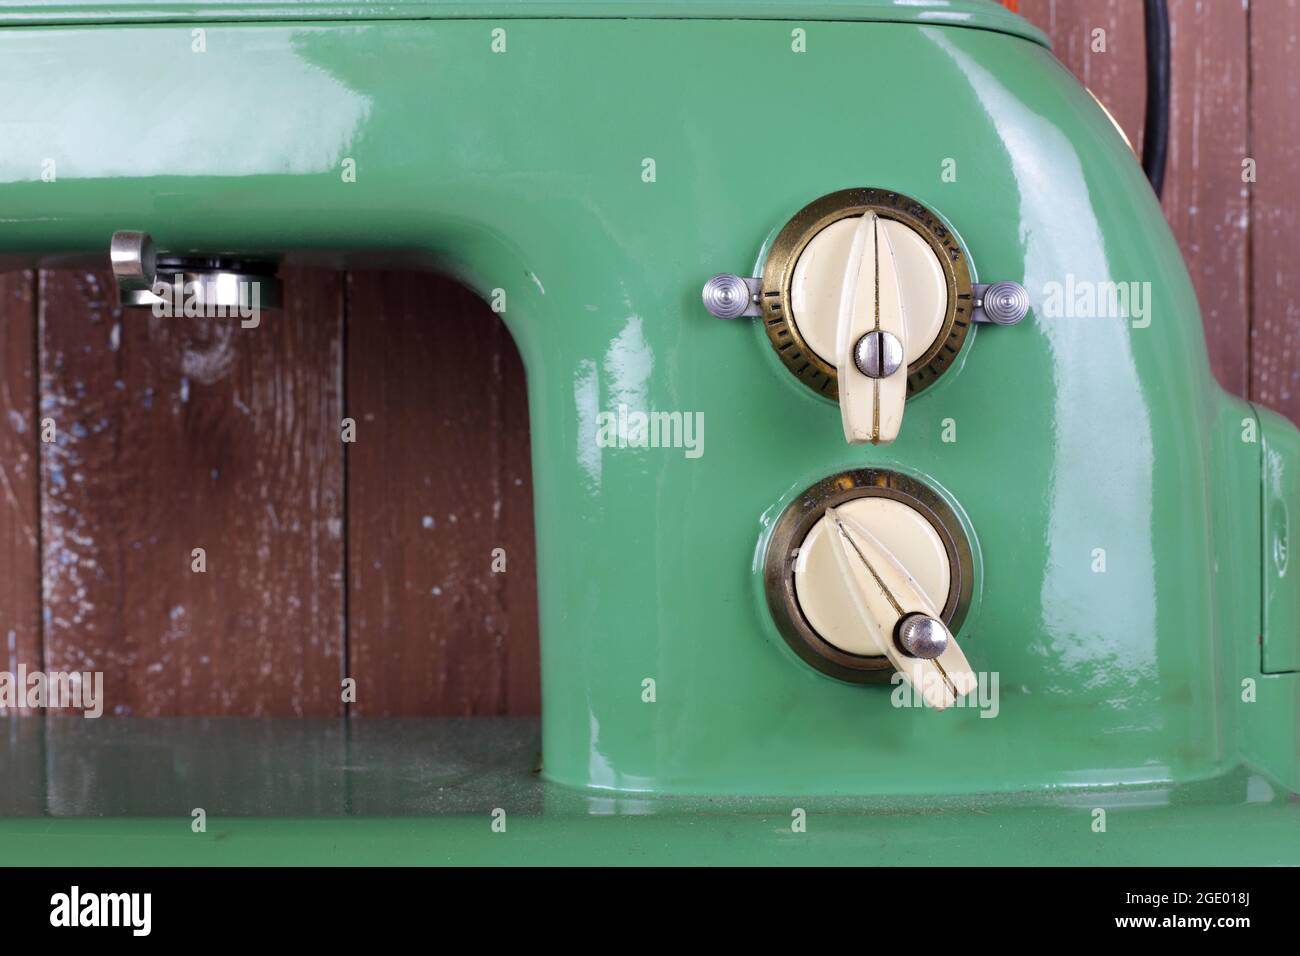 Appareils ménagers - gros plan fragment vieux rétro vert machine à coudre arrière-plan en bois Banque D'Images